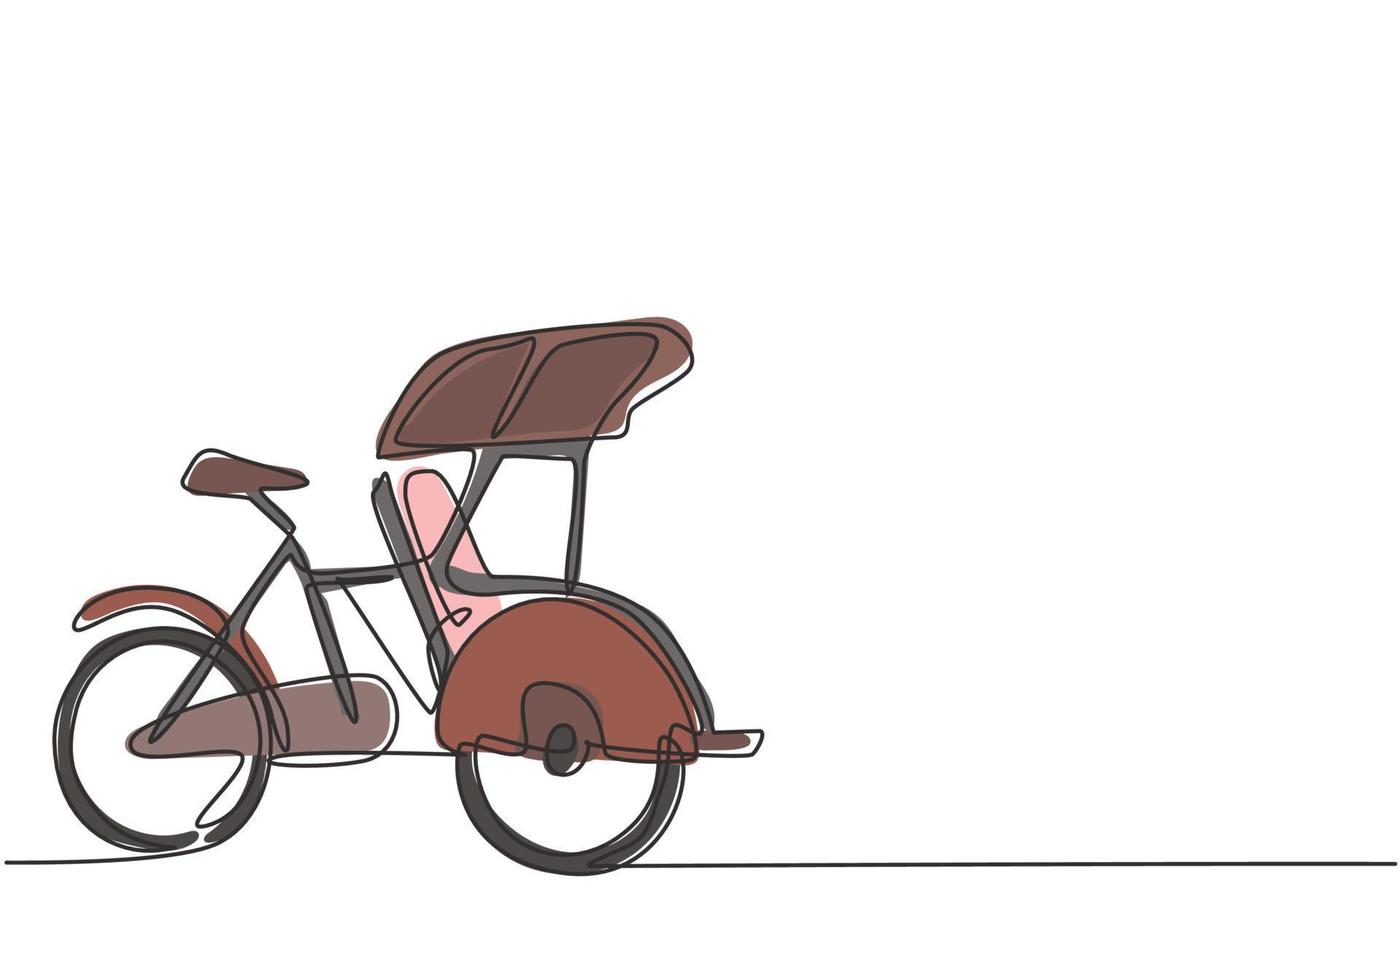 il pedicab a disegno continuo a una linea è visto dal lato con tre ruote e il sedile del passeggero anteriore e i comandi del conducente nella parte posteriore. illustrazione grafica vettoriale di disegno a linea singola.